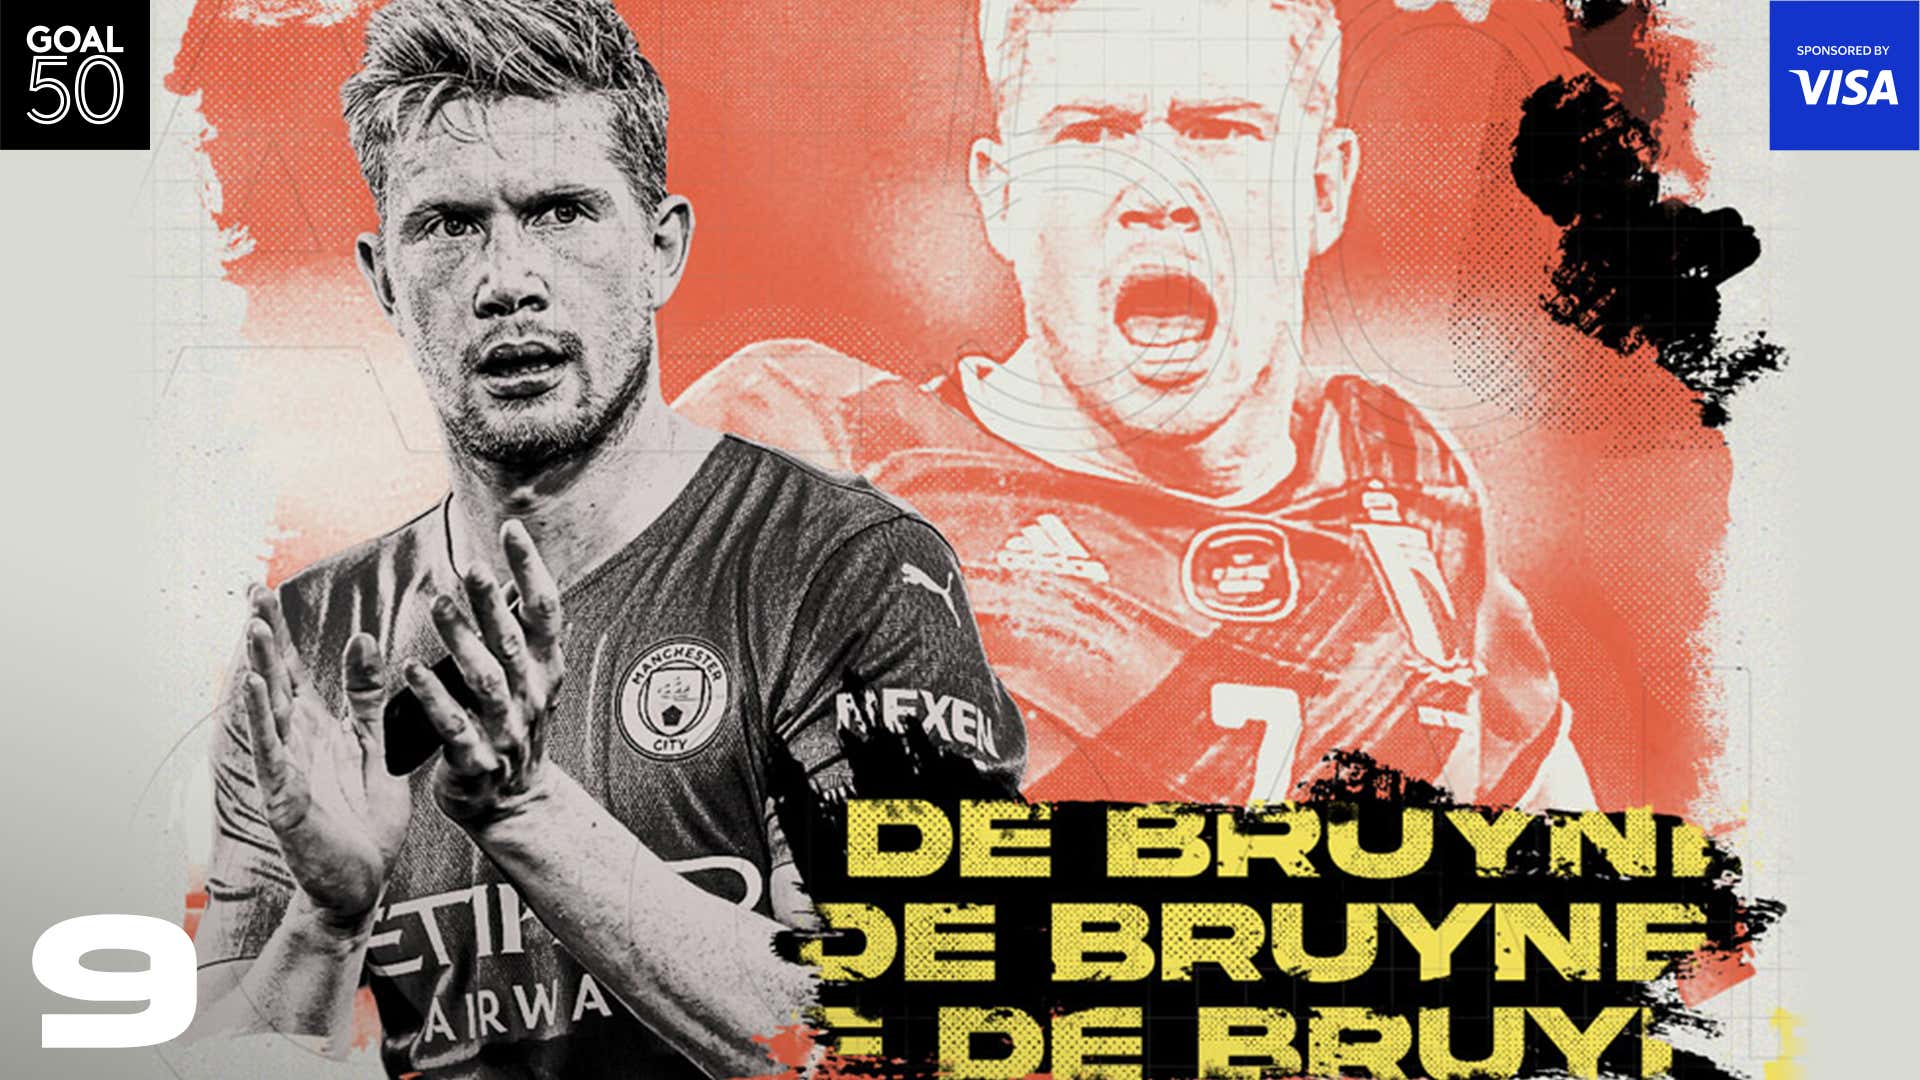 De Bruyne Goal50 2021